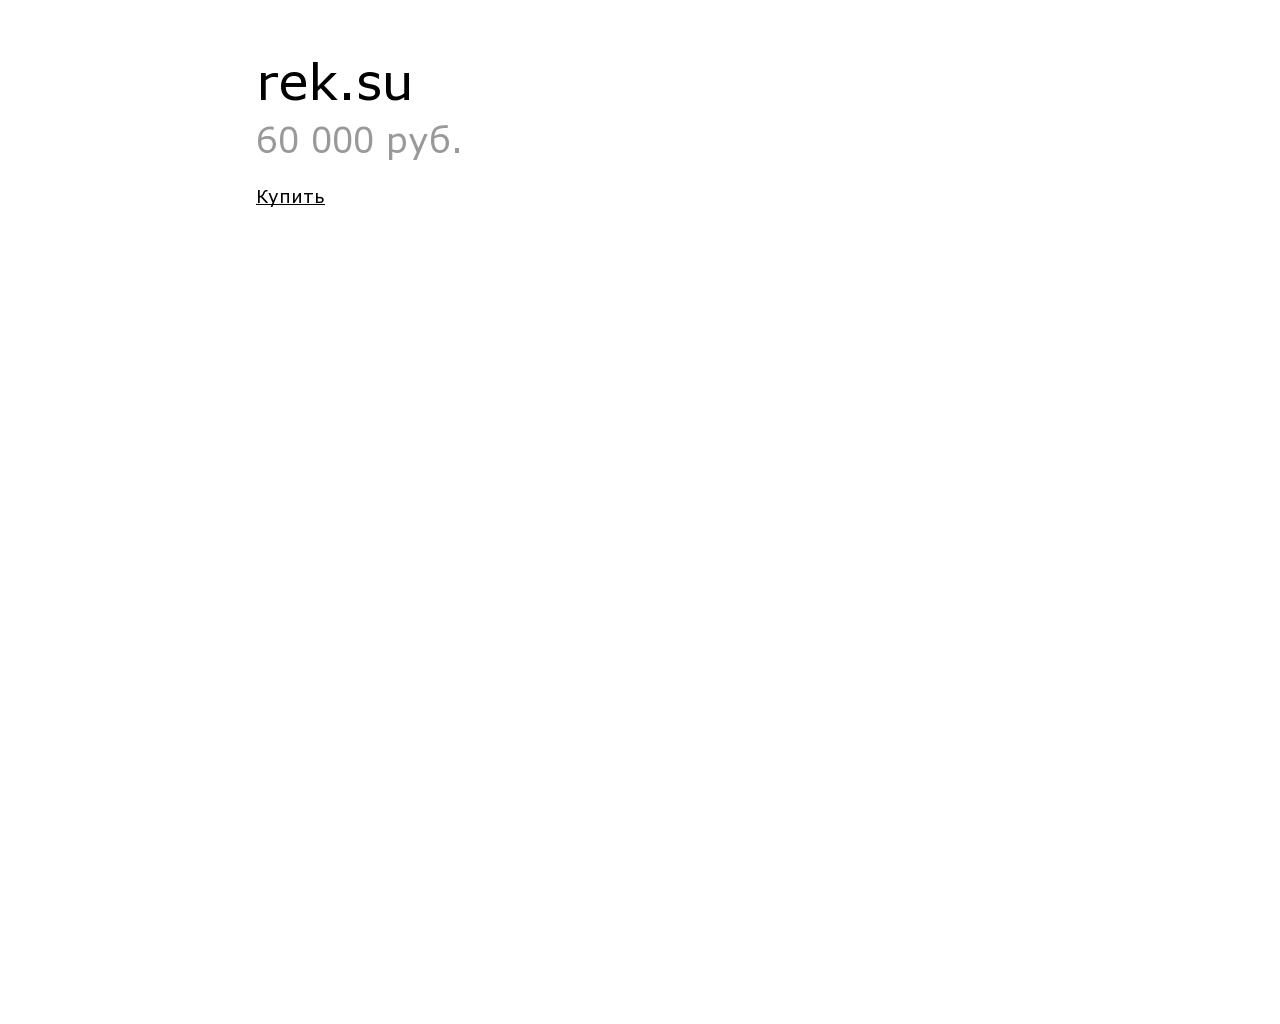 Изображение сайта rek.su в разрешении 1280x1024